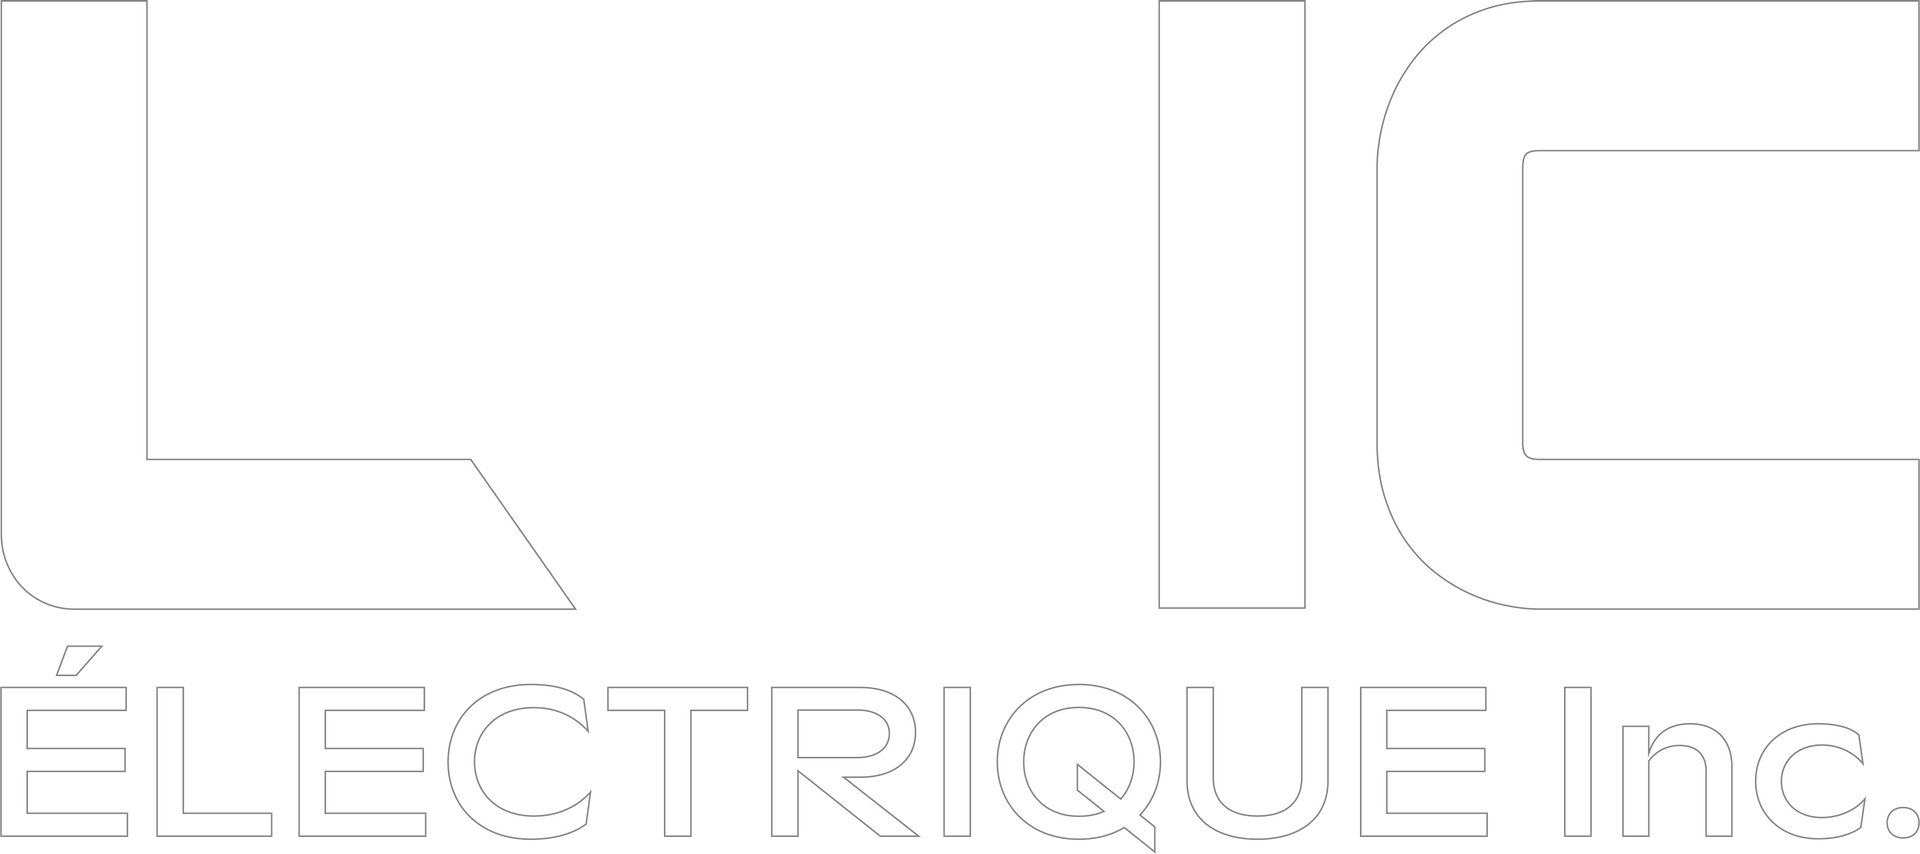 LOIC Électrique inc. logo